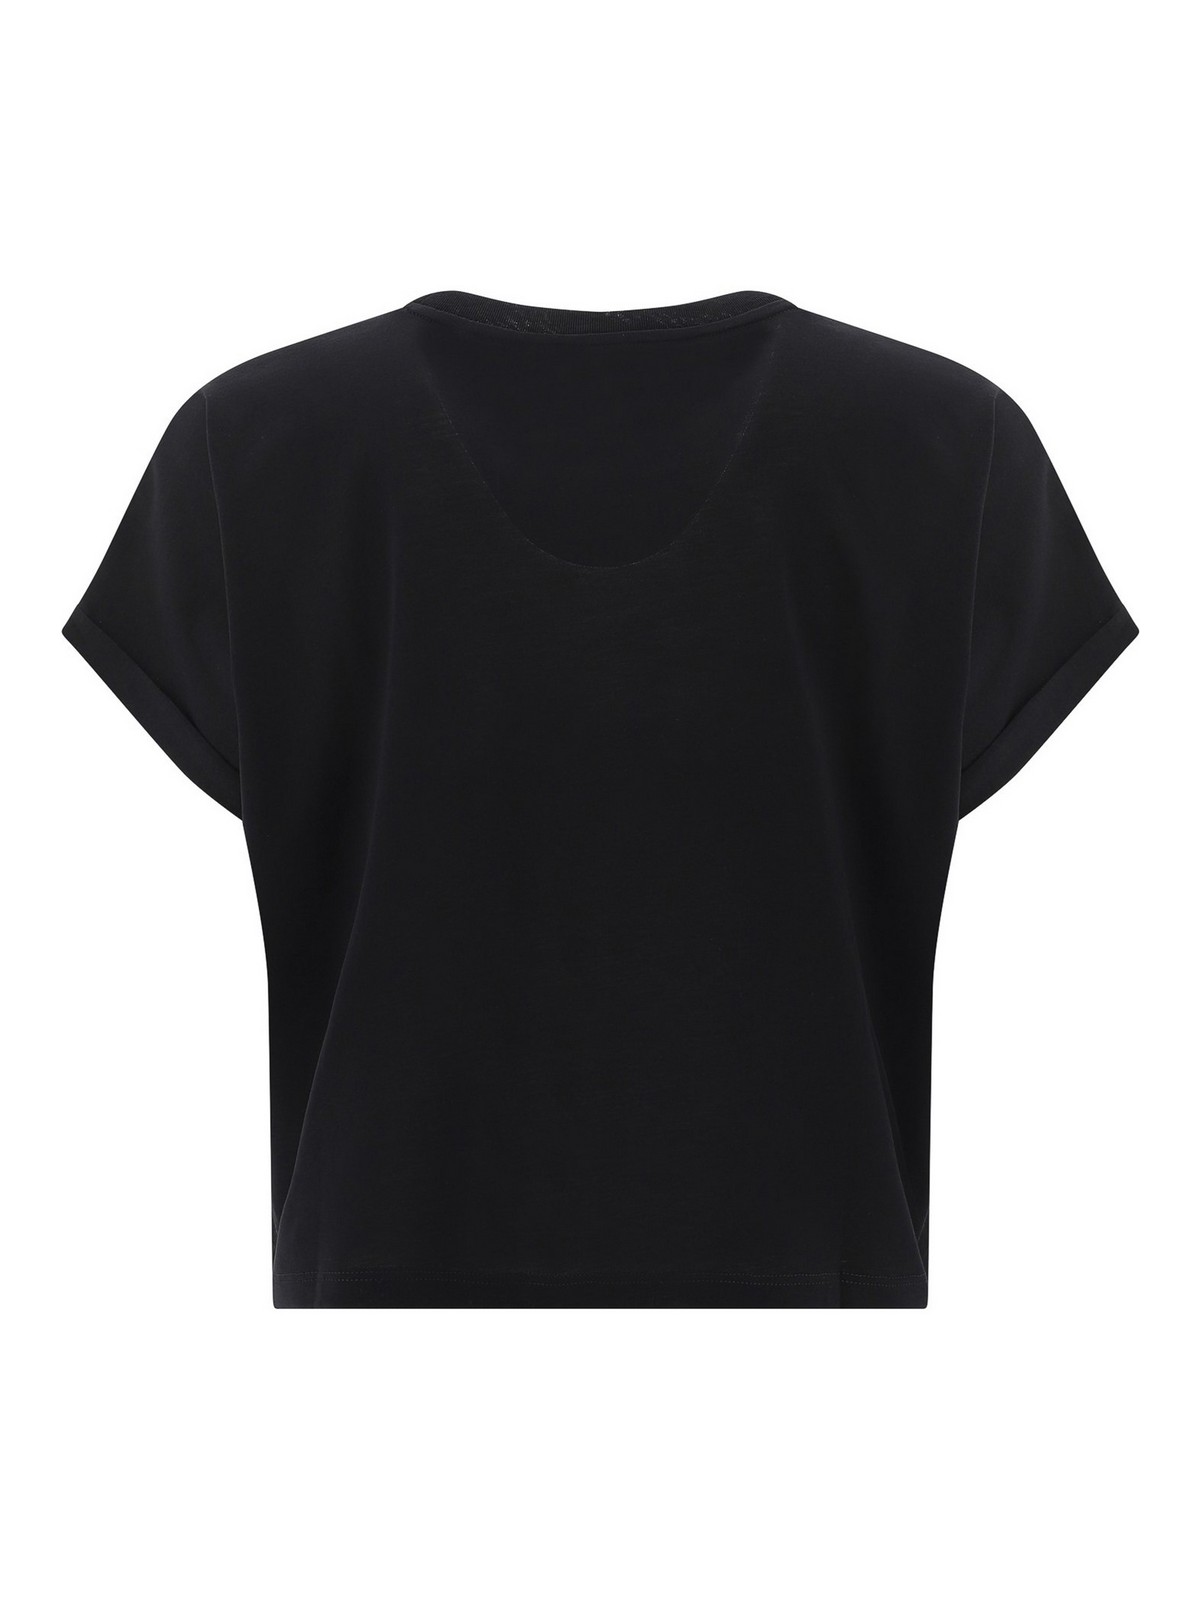 Balmain Flocked Monogram Crewneck Jersey T-Shirt in Ivory/Black